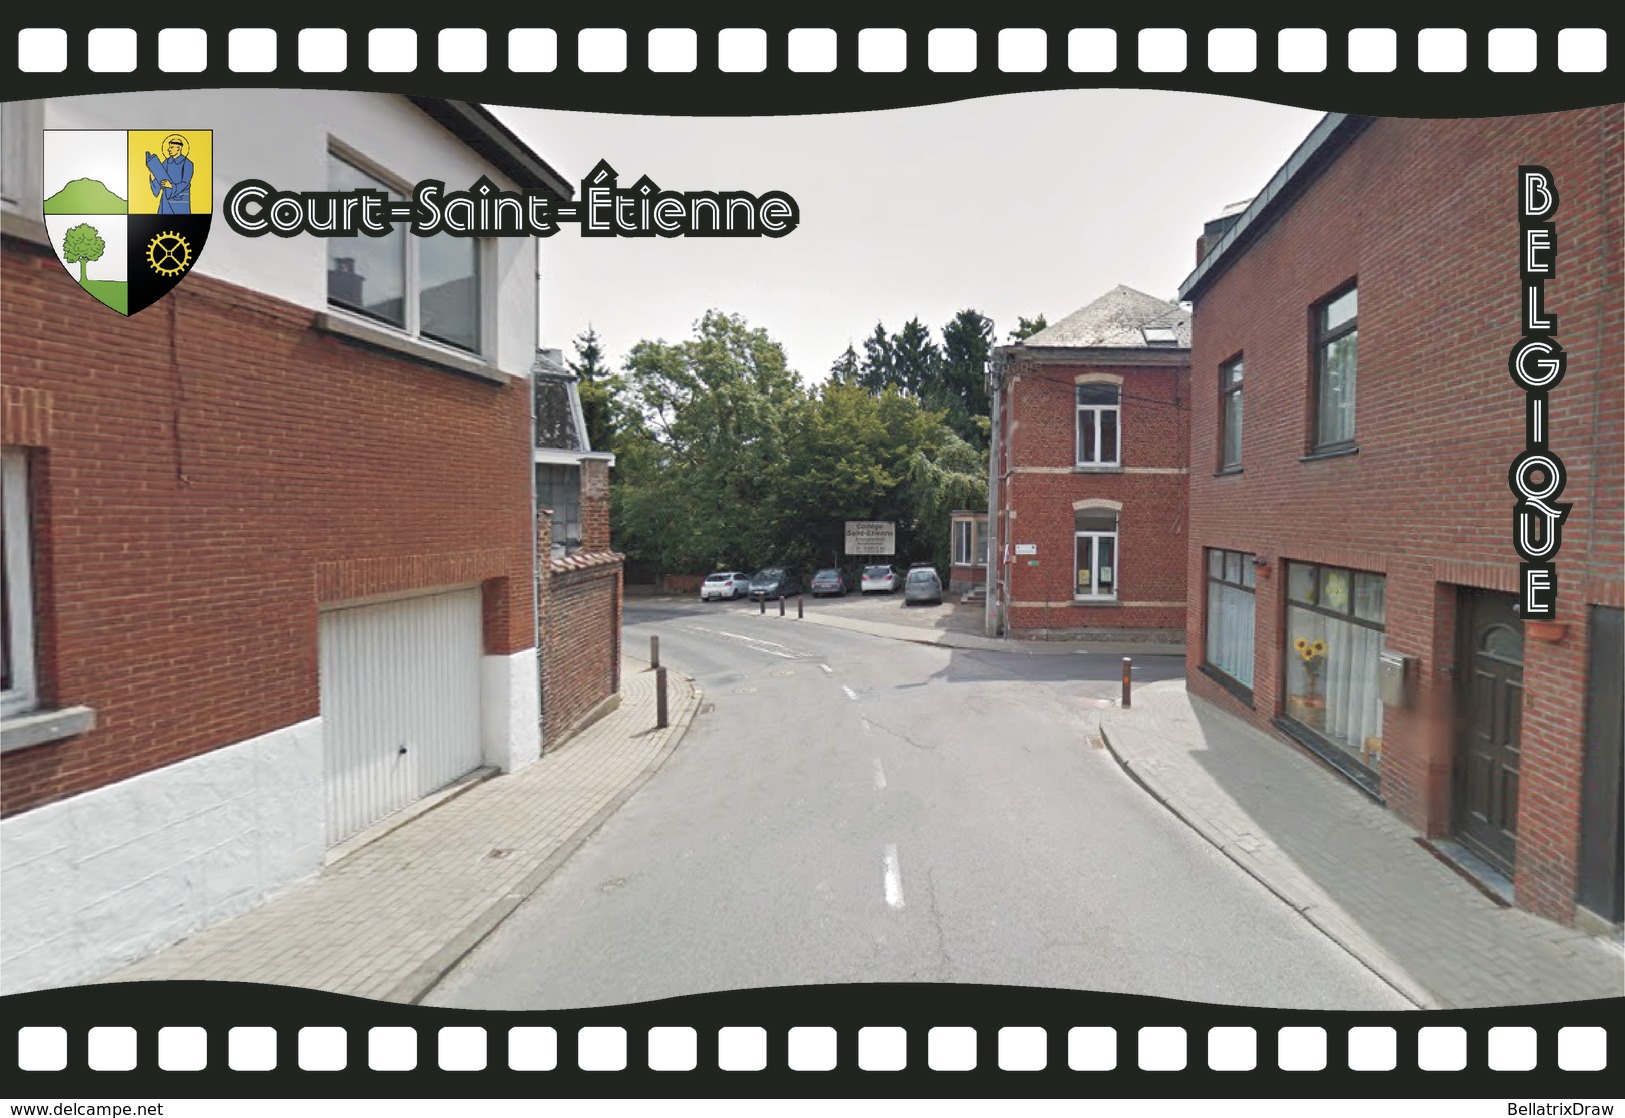 Postcard, REPRODUCTION, Municipalities Of Belgium, Streets Of Court-Saint-Étienne 14 - Cartes Géographiques